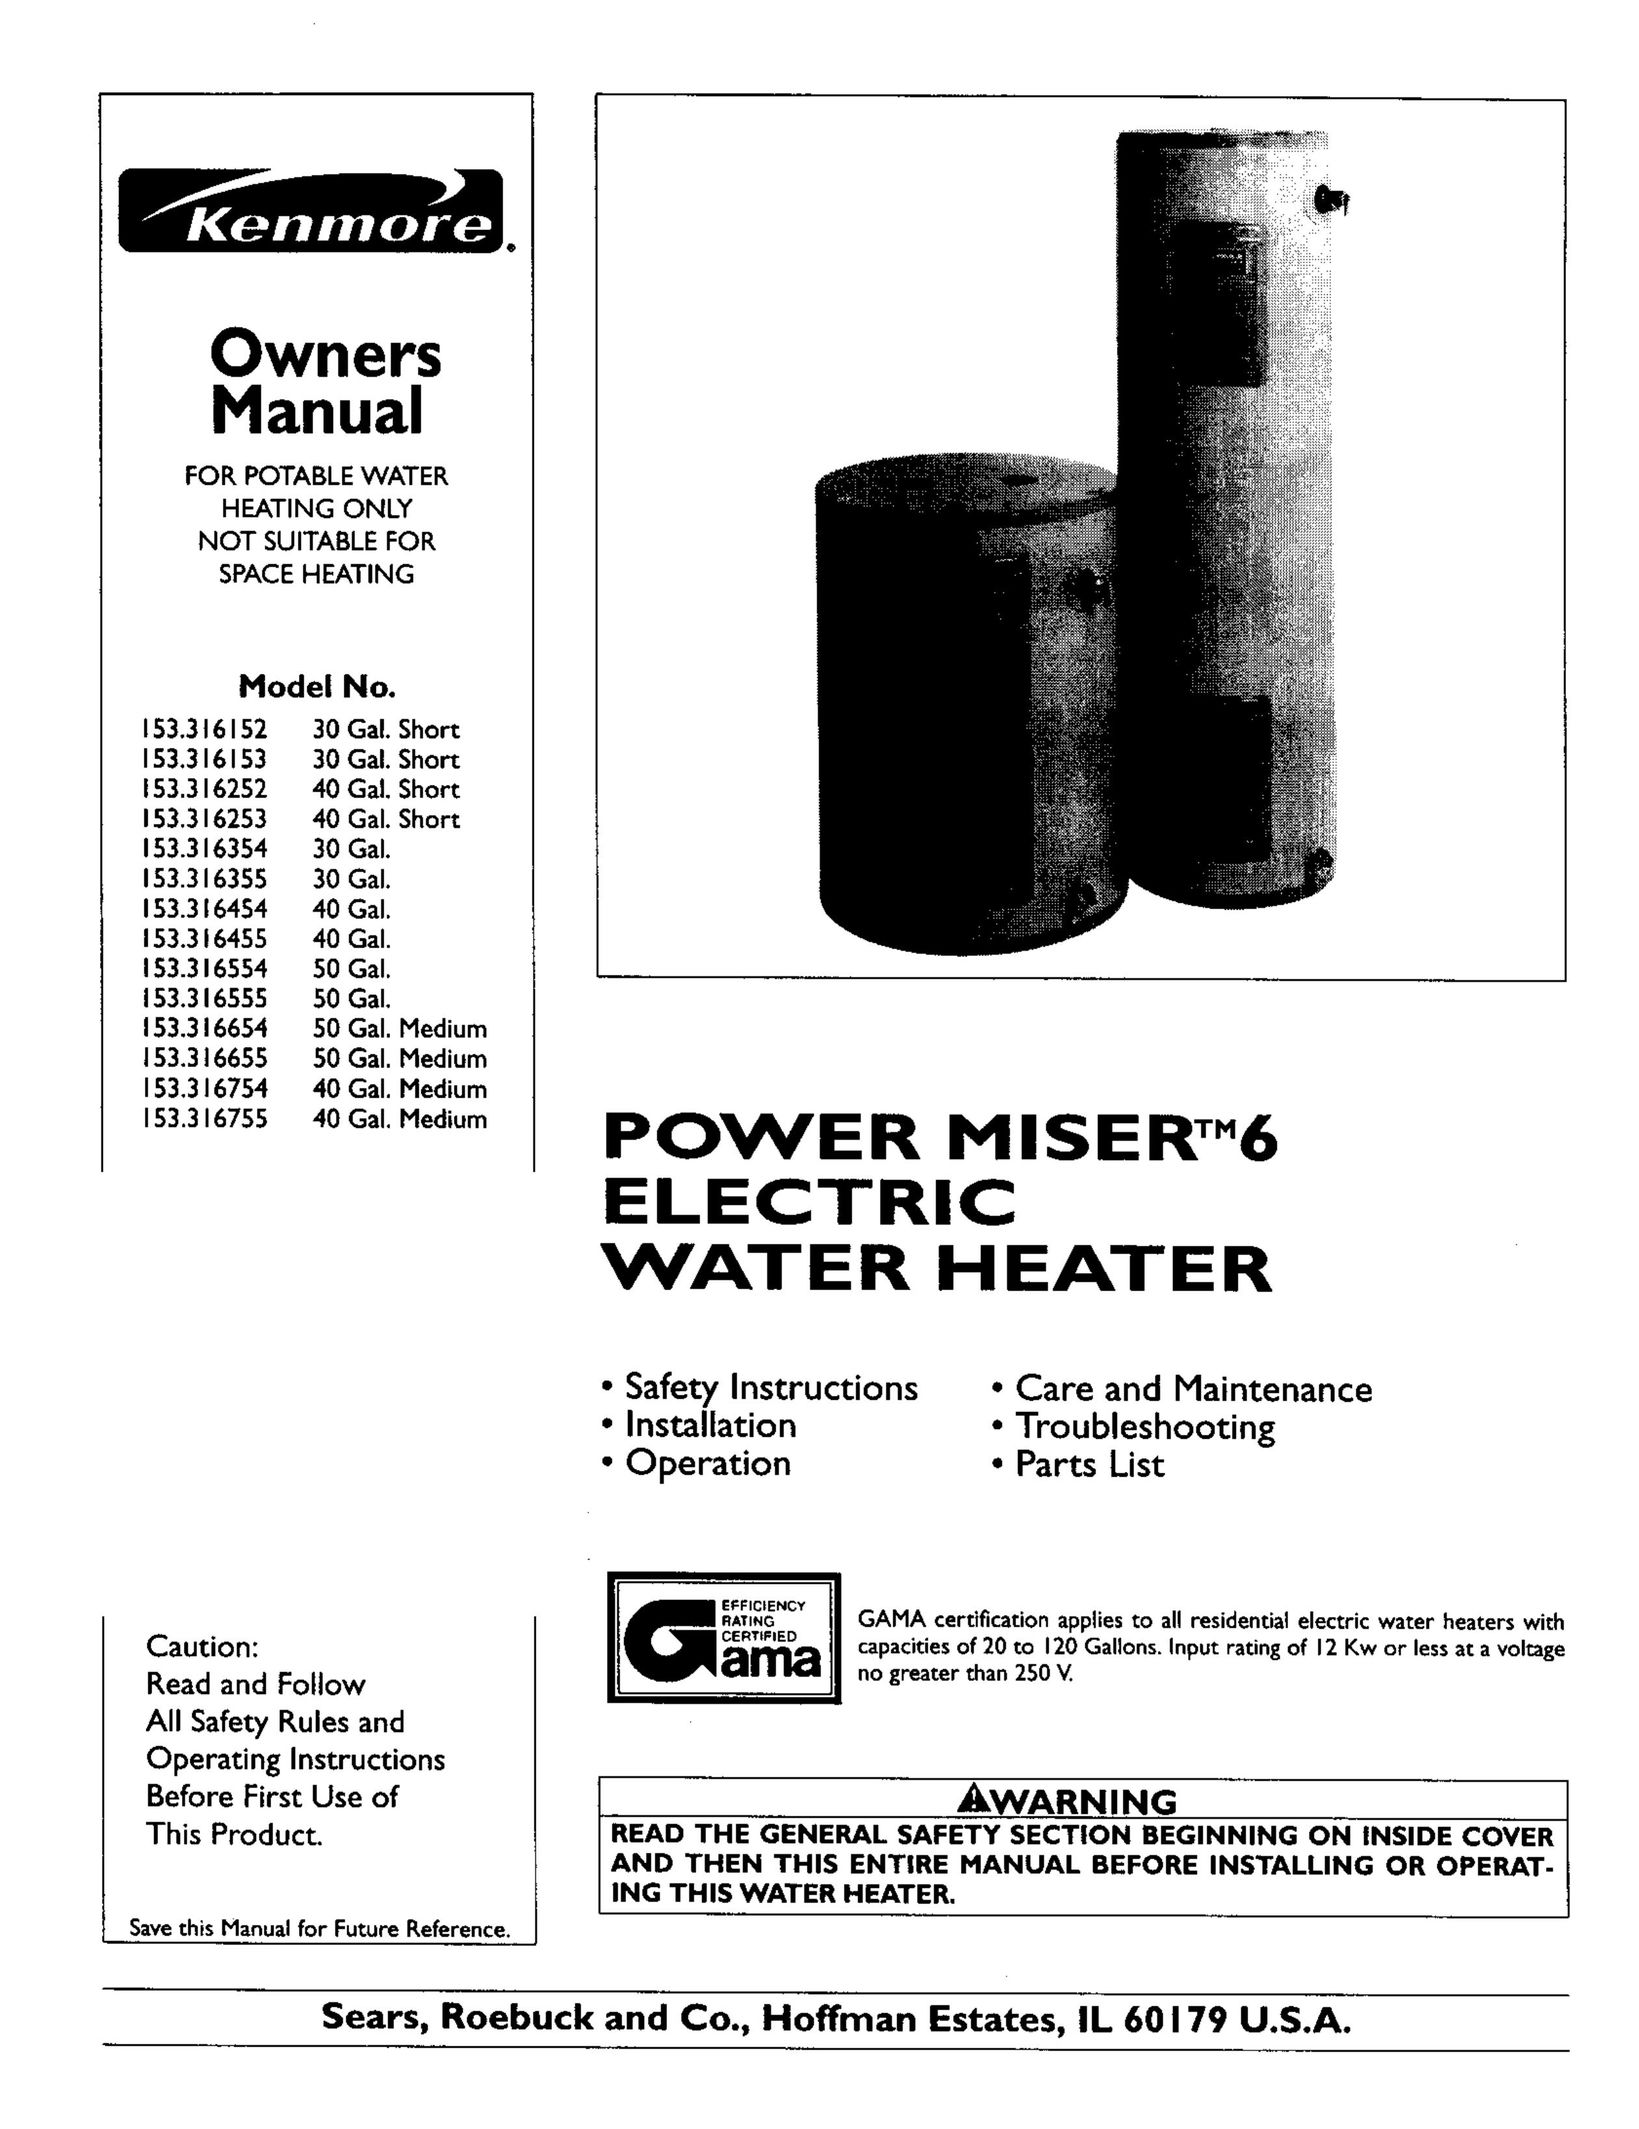 Kenmore 153.316755 Water Heater User Manual